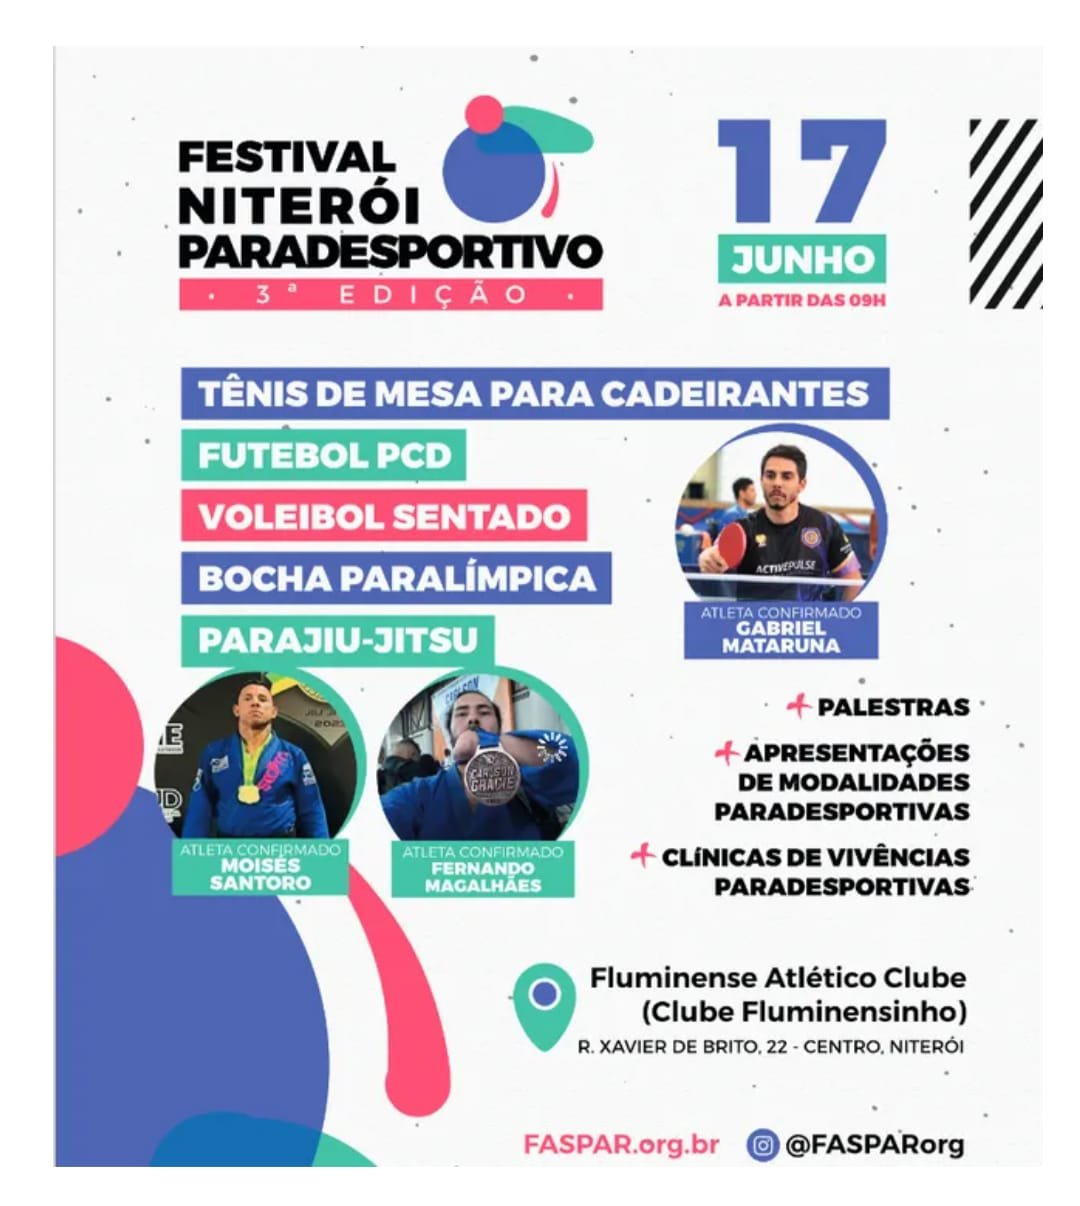 Festival paradesportivo promove inclusão em Niterói